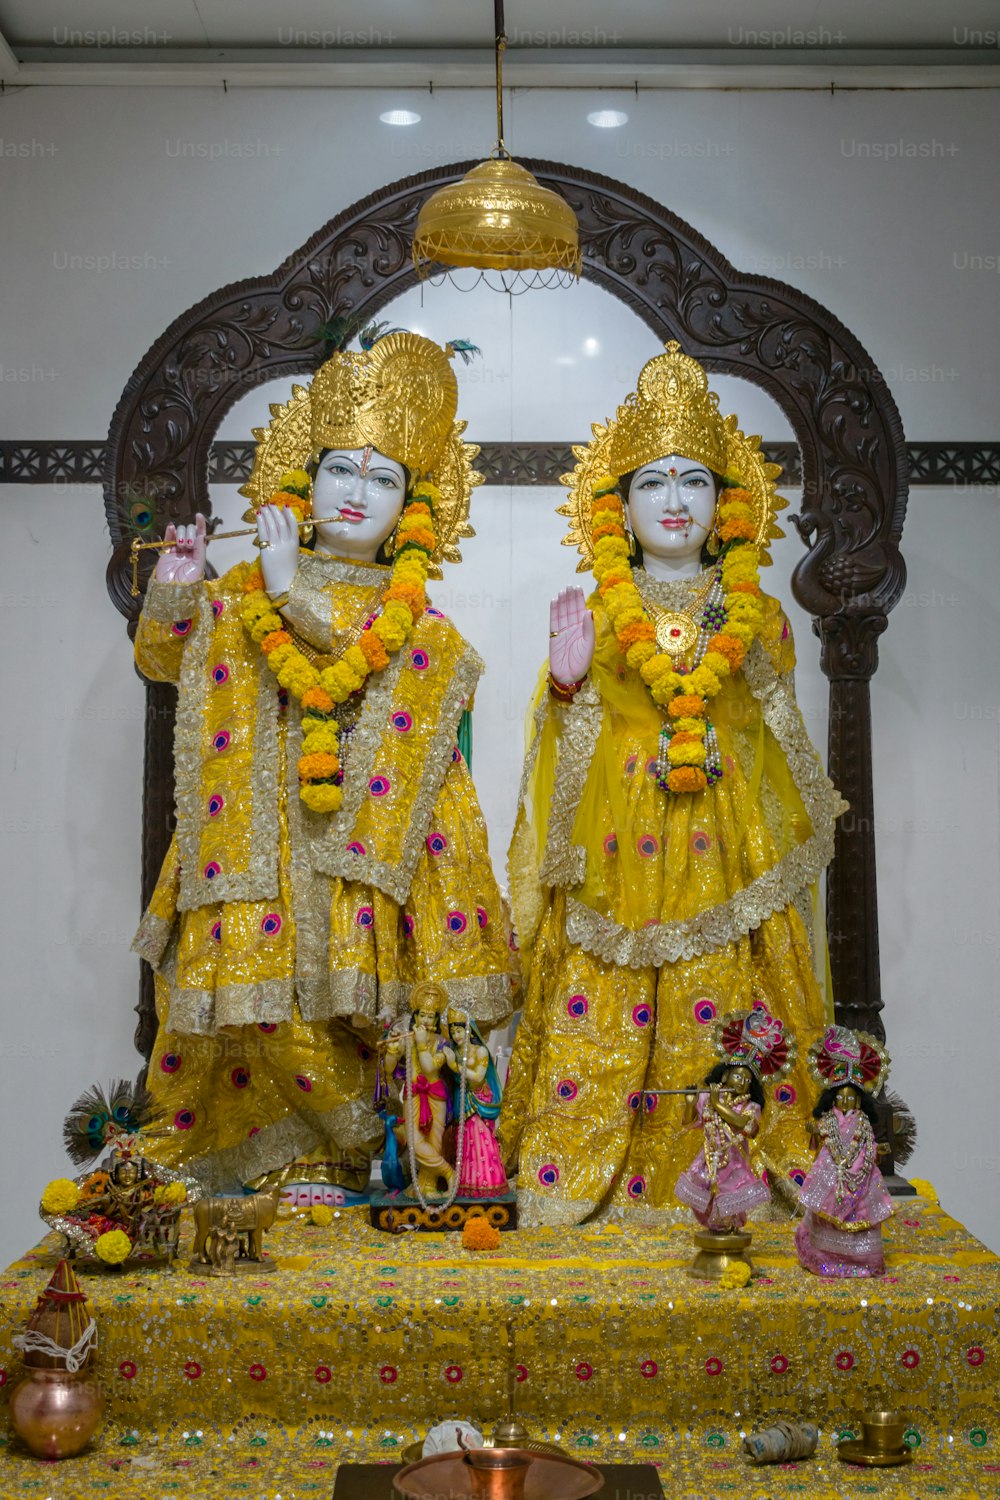 Eine Statue von zwei gelb gekleideten Personen